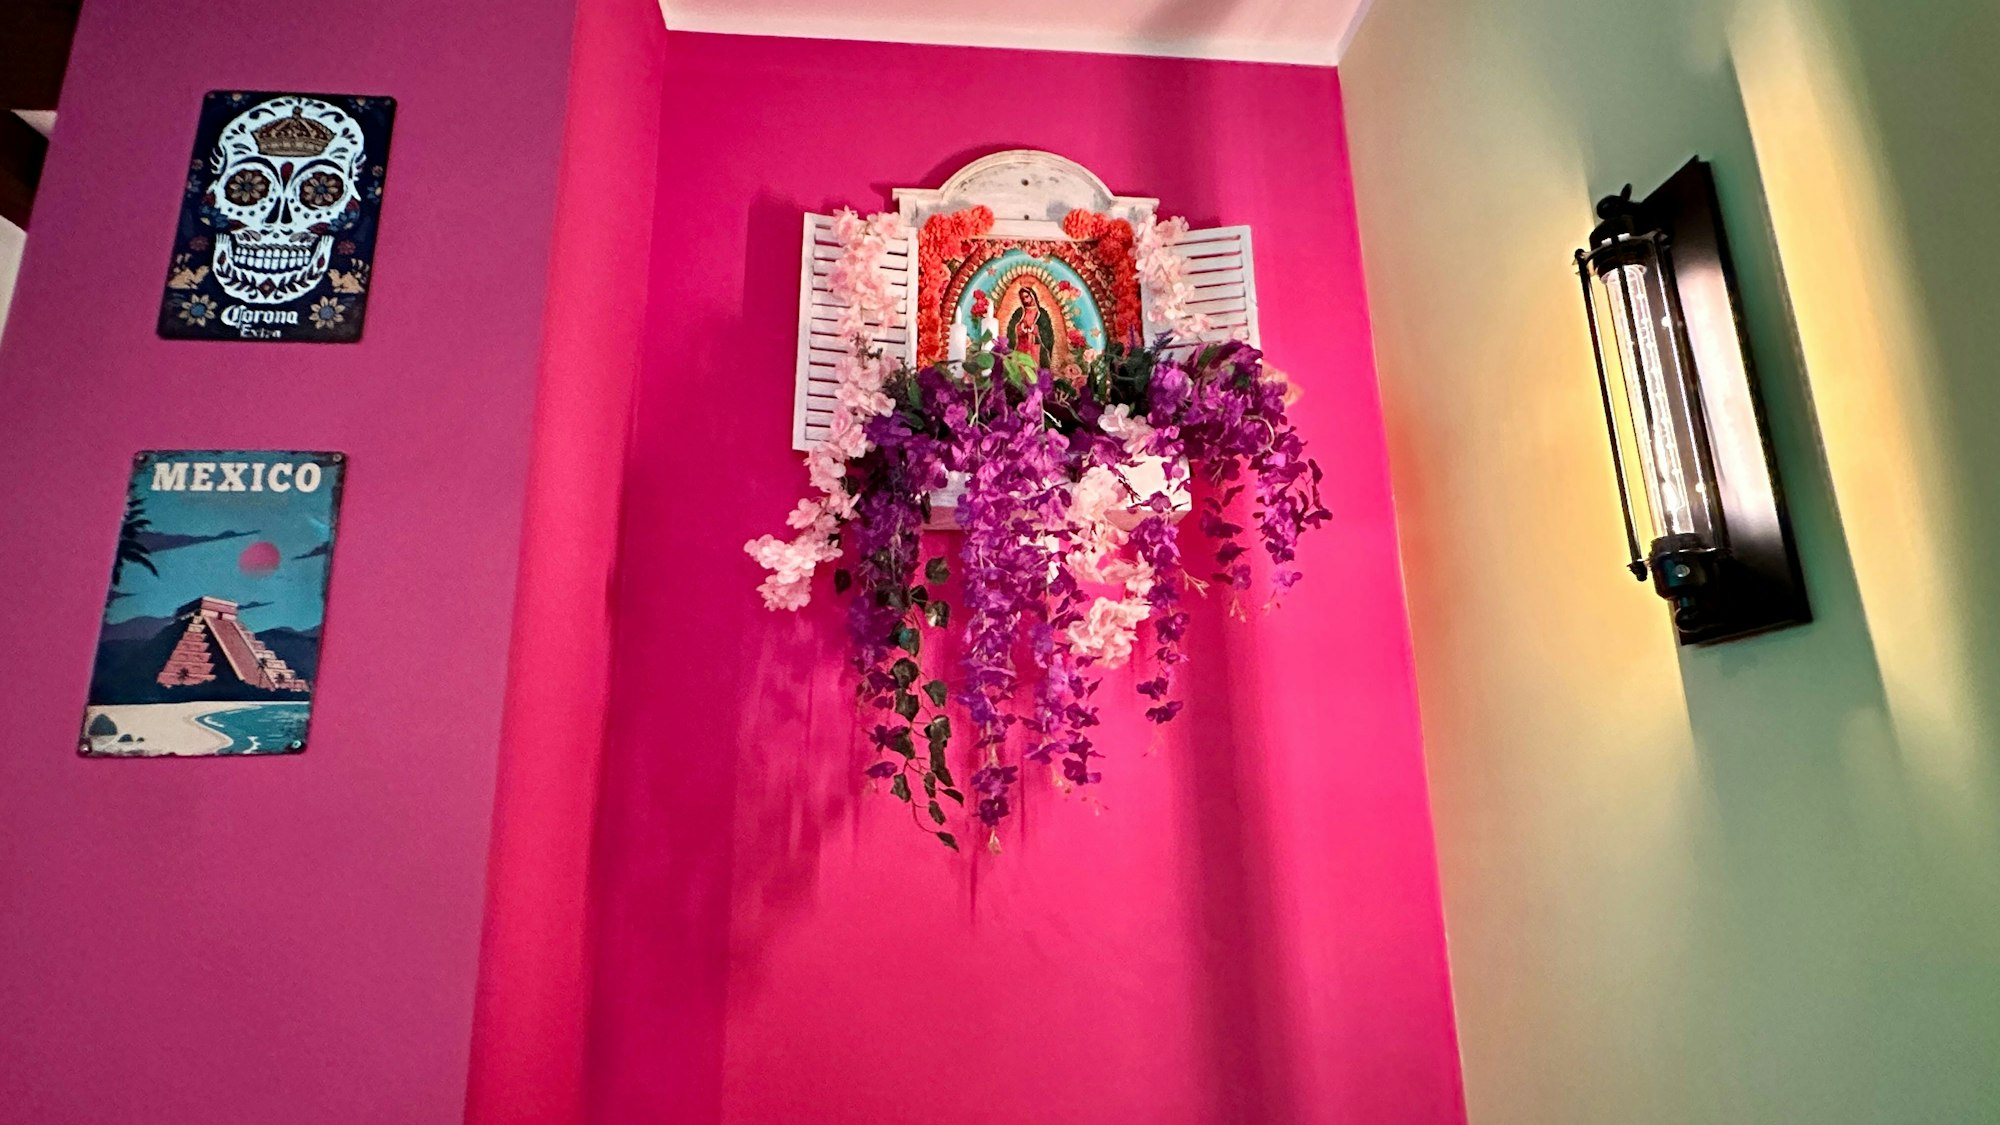 An einer pink gestrichenen Wand hängen Bilder und Wandschmuck aus Mexiko.